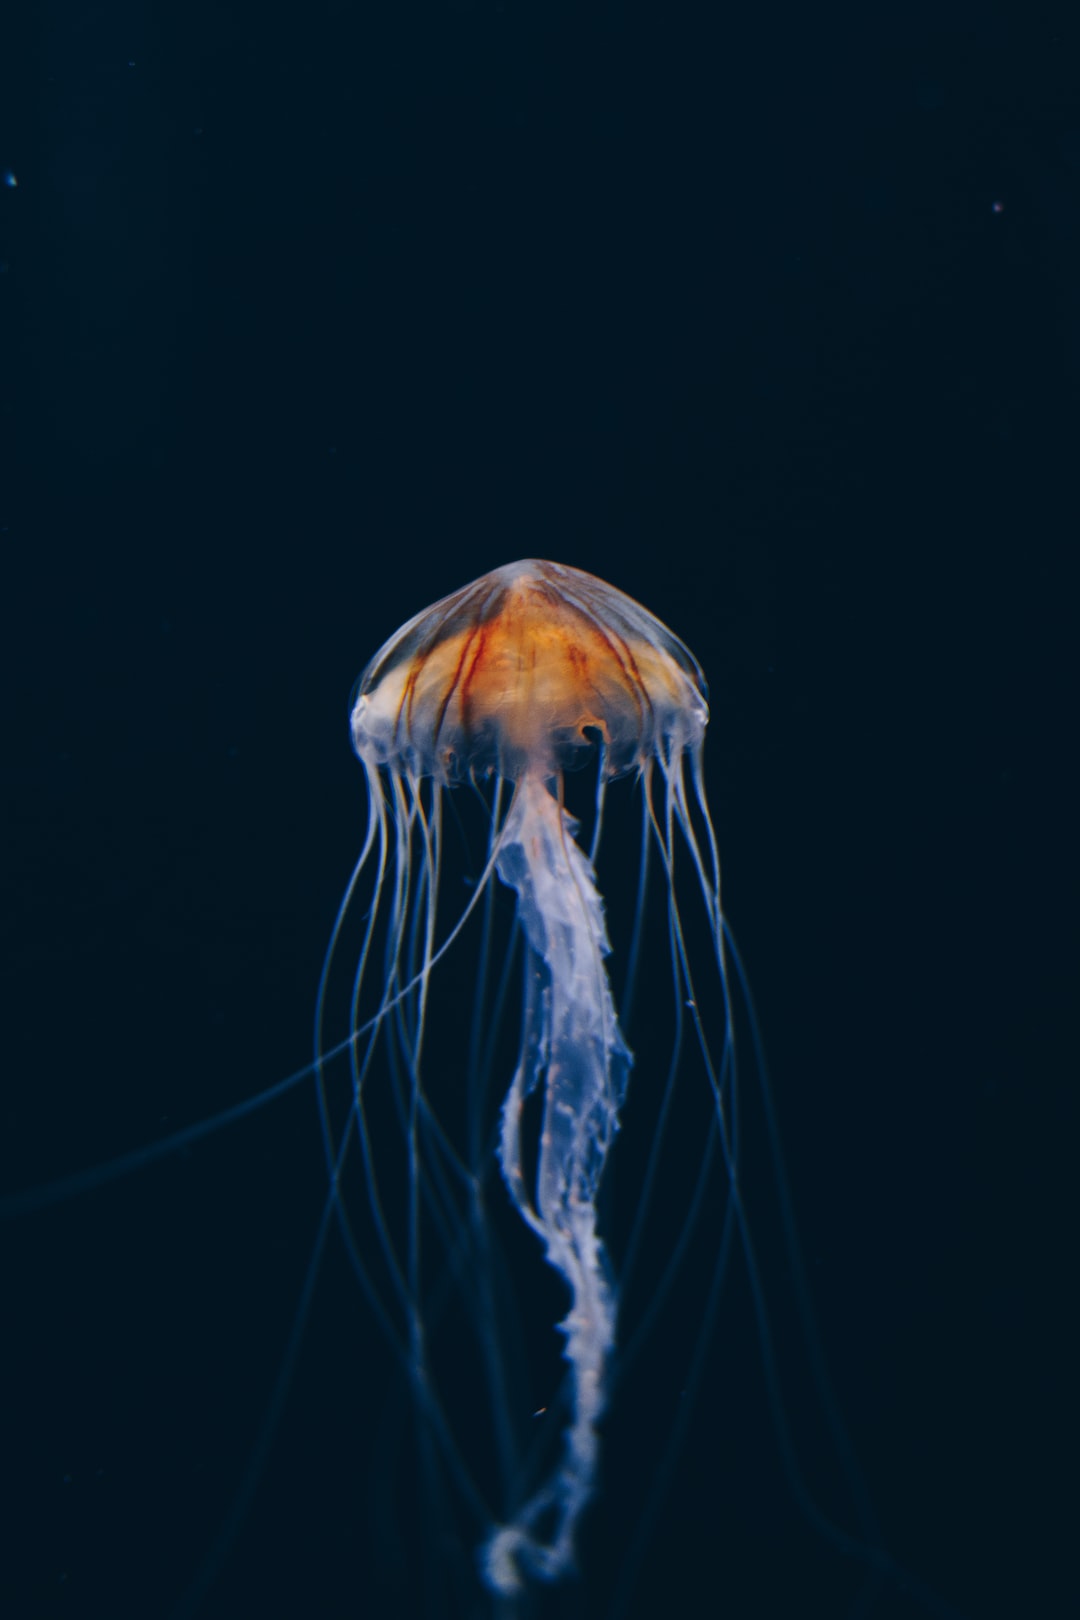 25 wichtige Fragen zu Was Brauche Ich An Technik Für Ein Meerwasseraquarium?